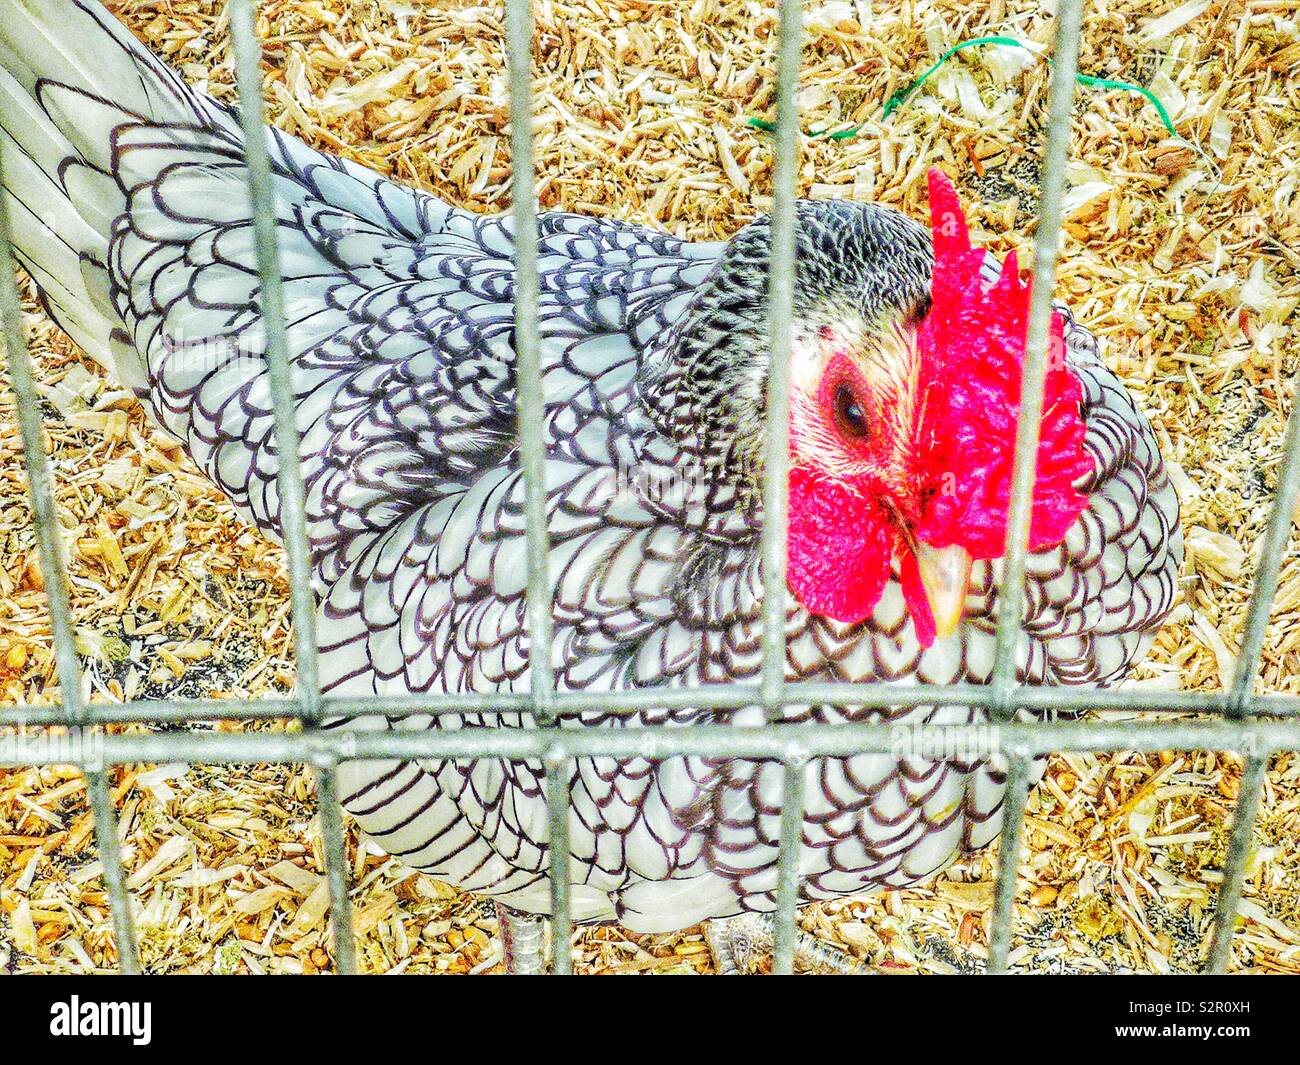 Argento-legare Wyandotte pollo in gabbia Foto Stock